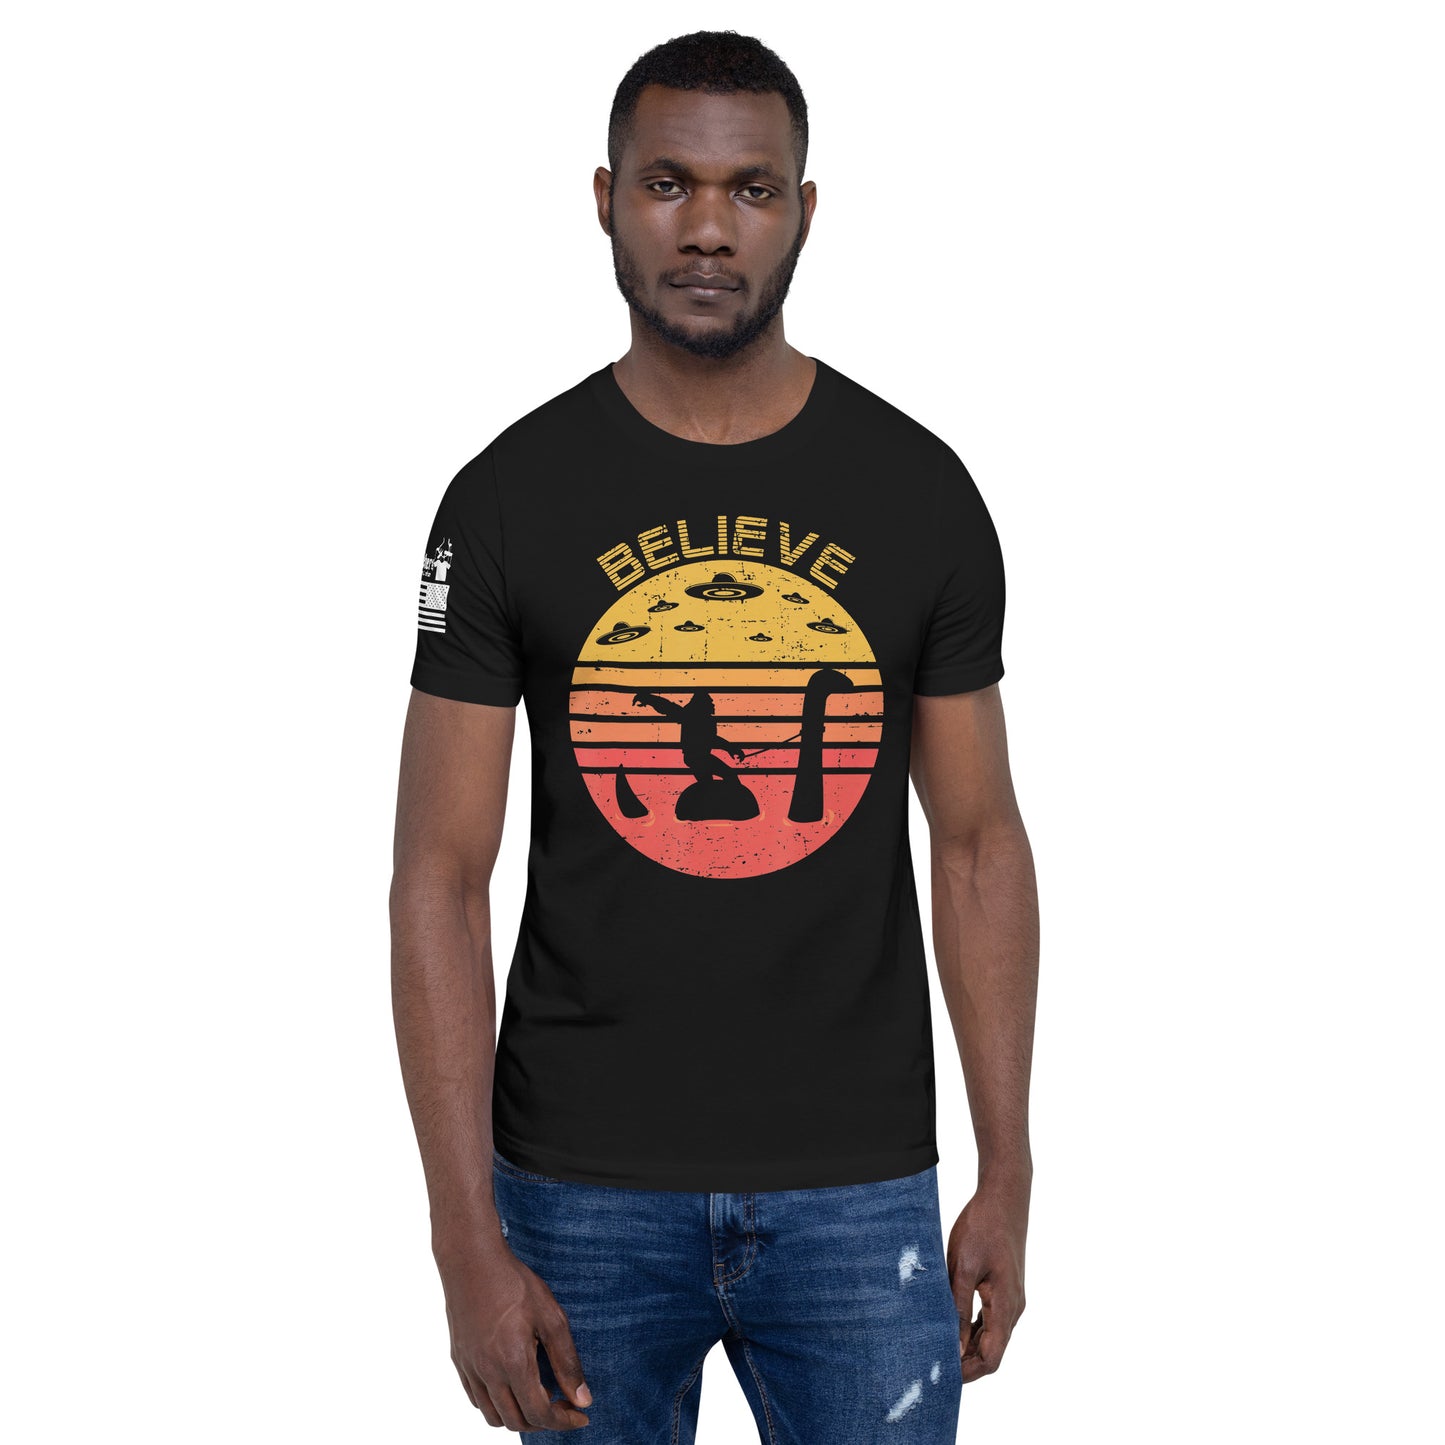 Believe - Premium T-Shirt (unisex) | TheShirtfather